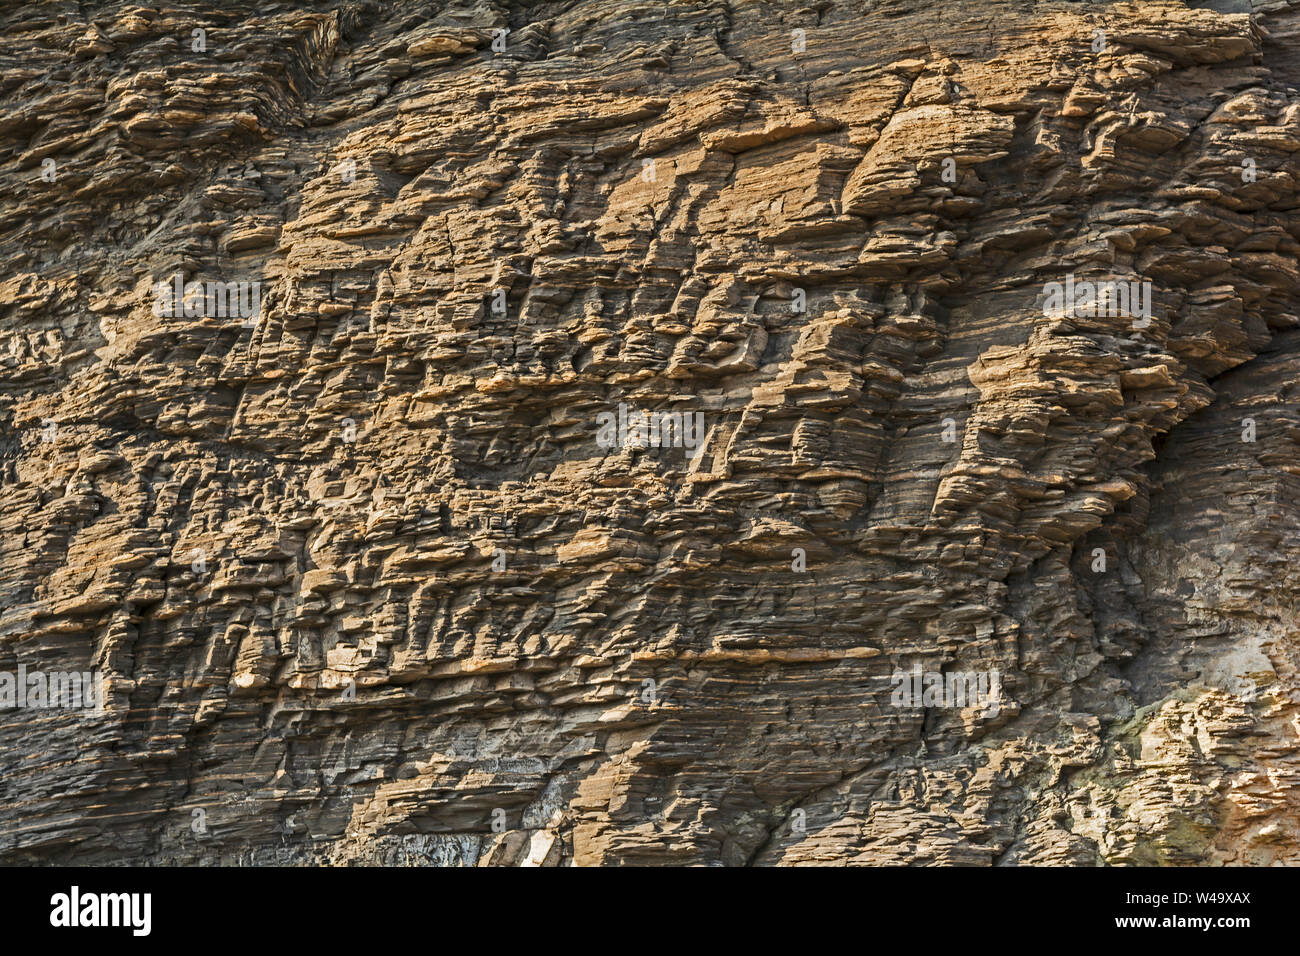 Textures fines sur cliff rock face Banque D'Images